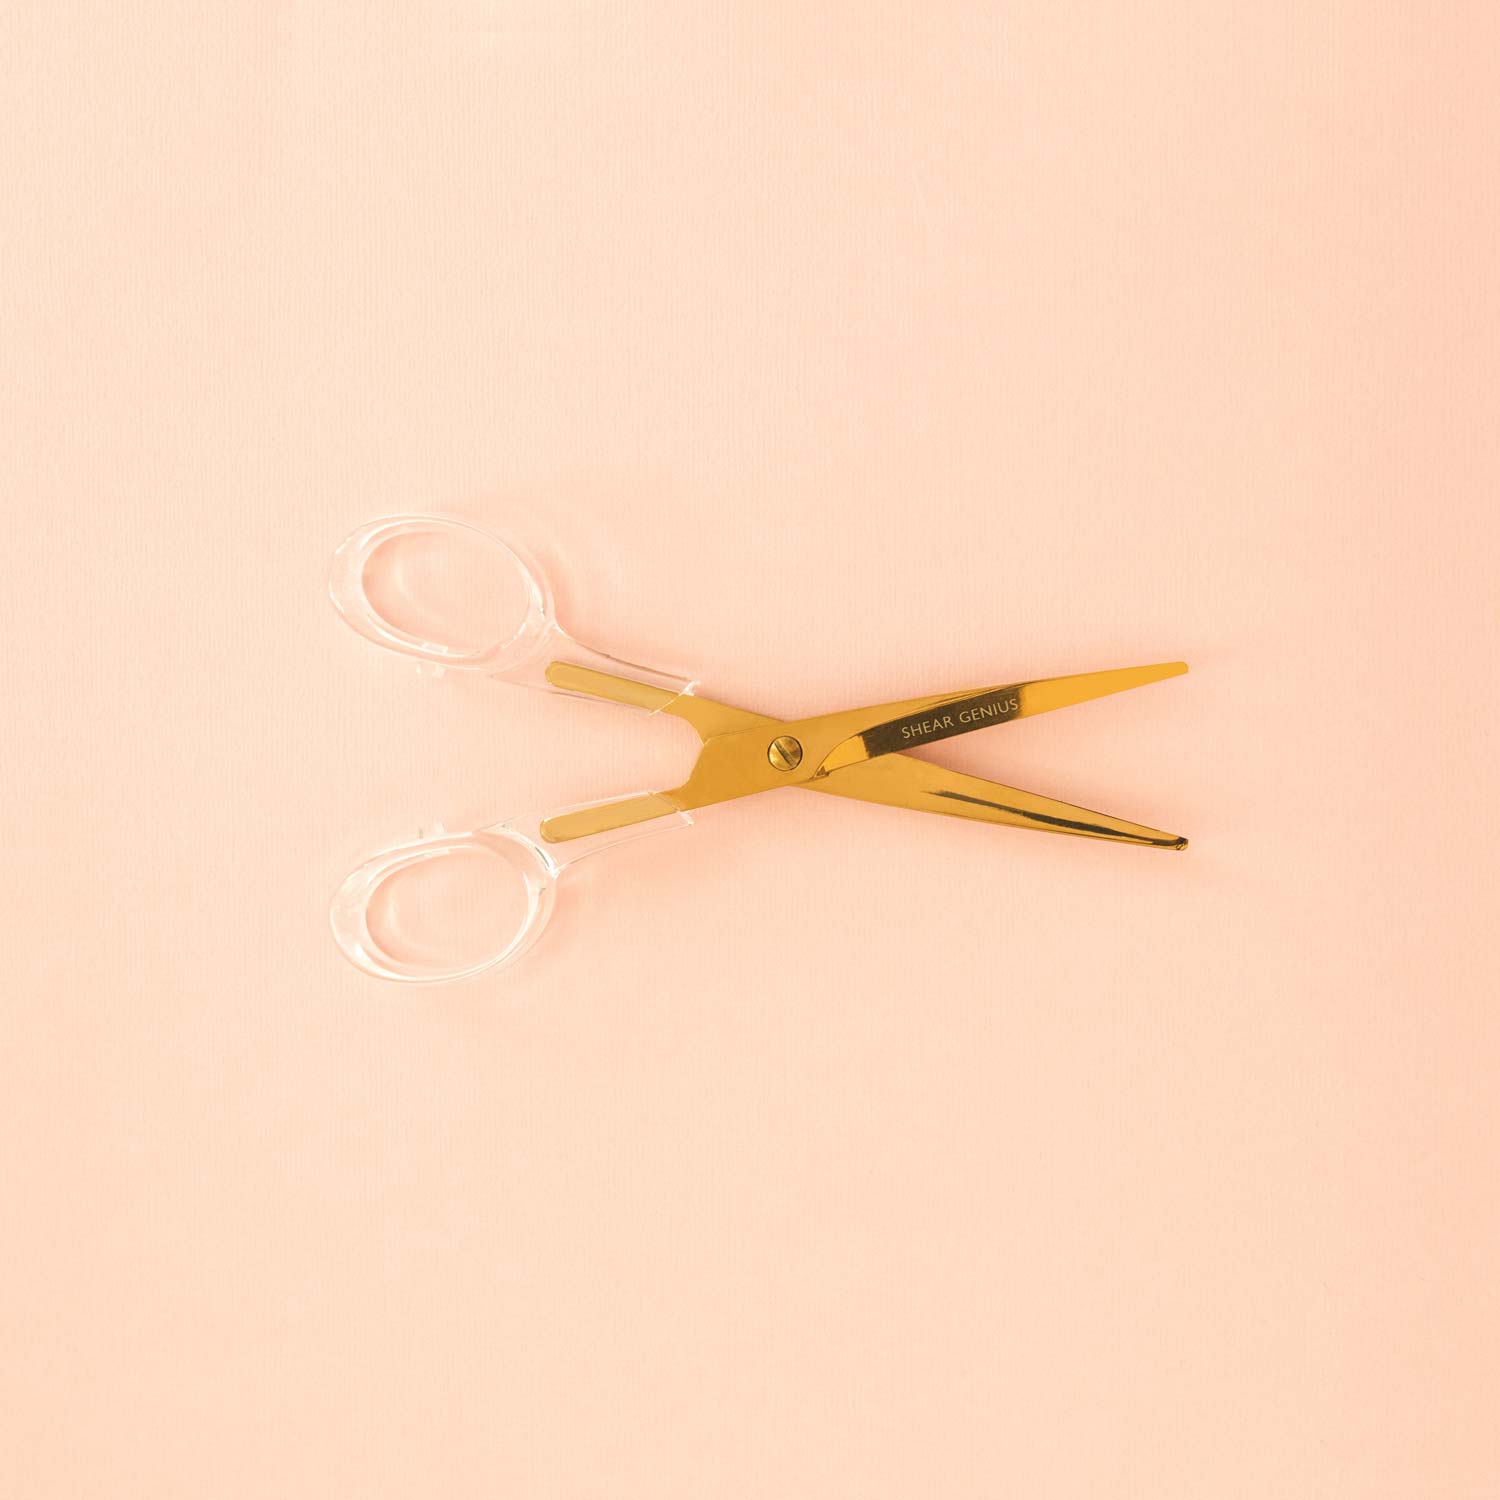 rose gold scissors